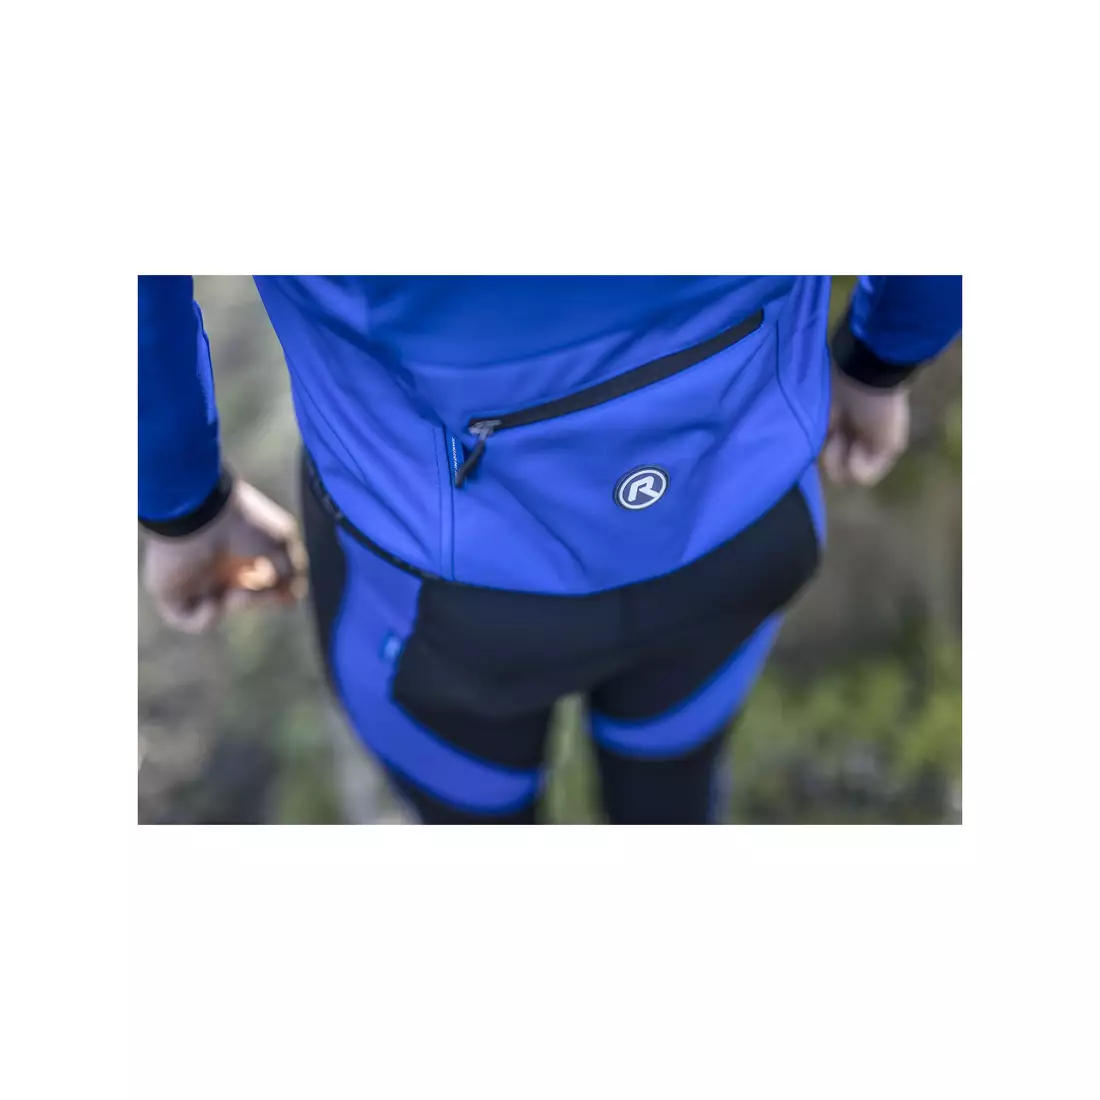 ROGELLI PESARO 2.0 téli kerékpáros kabát, kék